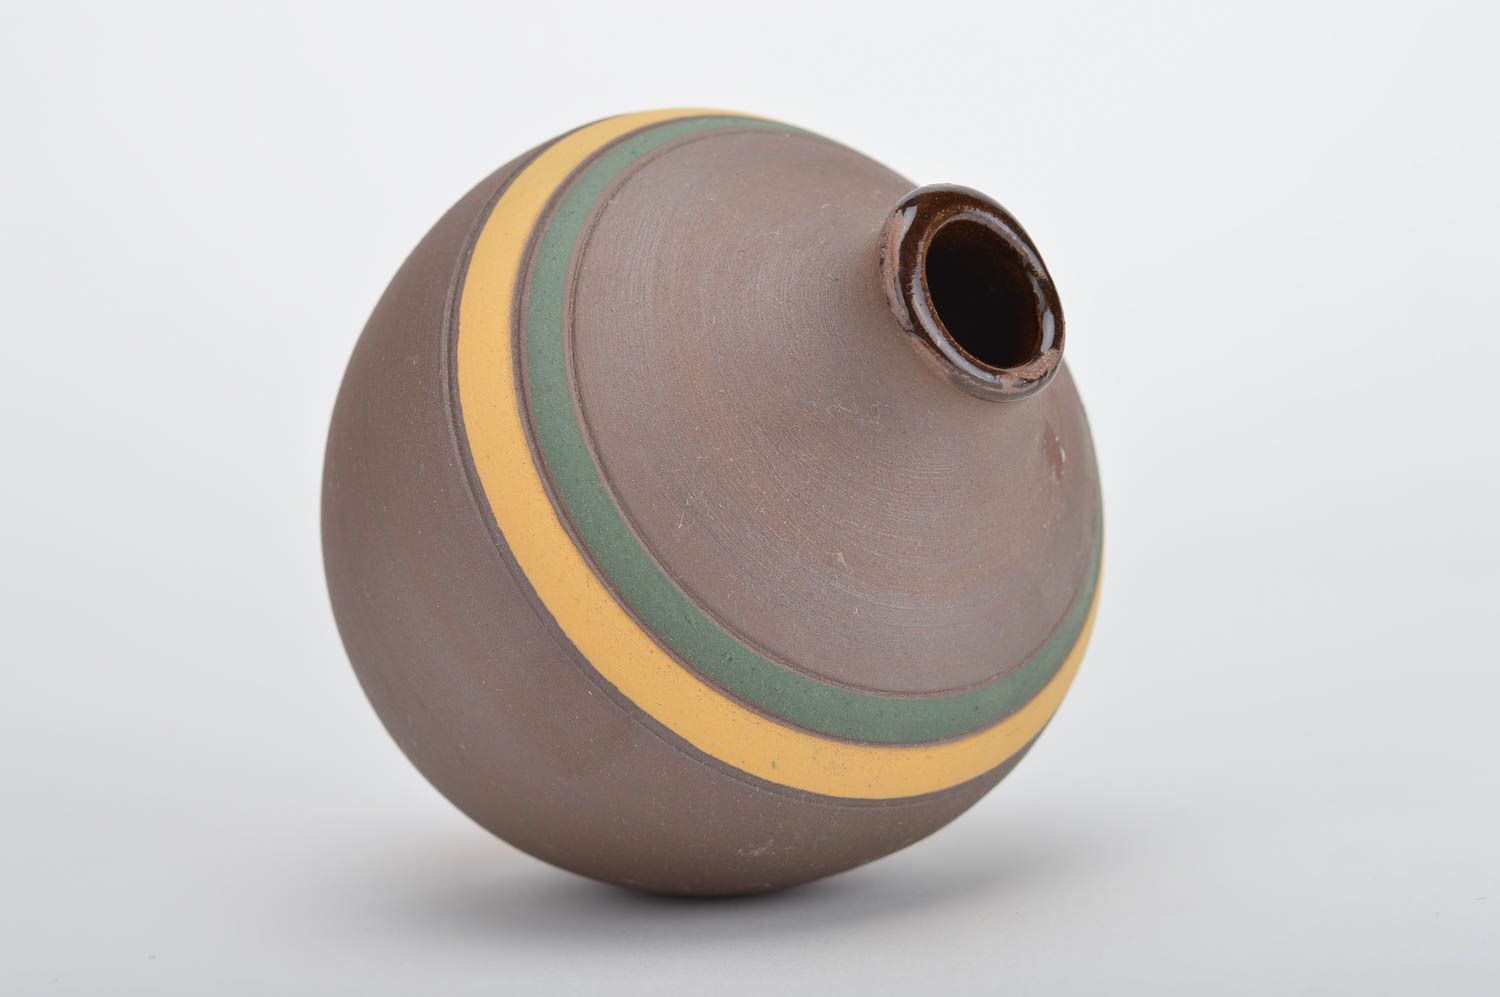 Декоративная ваза в этно стиле широкая с узким горлышком глиняная ручной работы фото 1